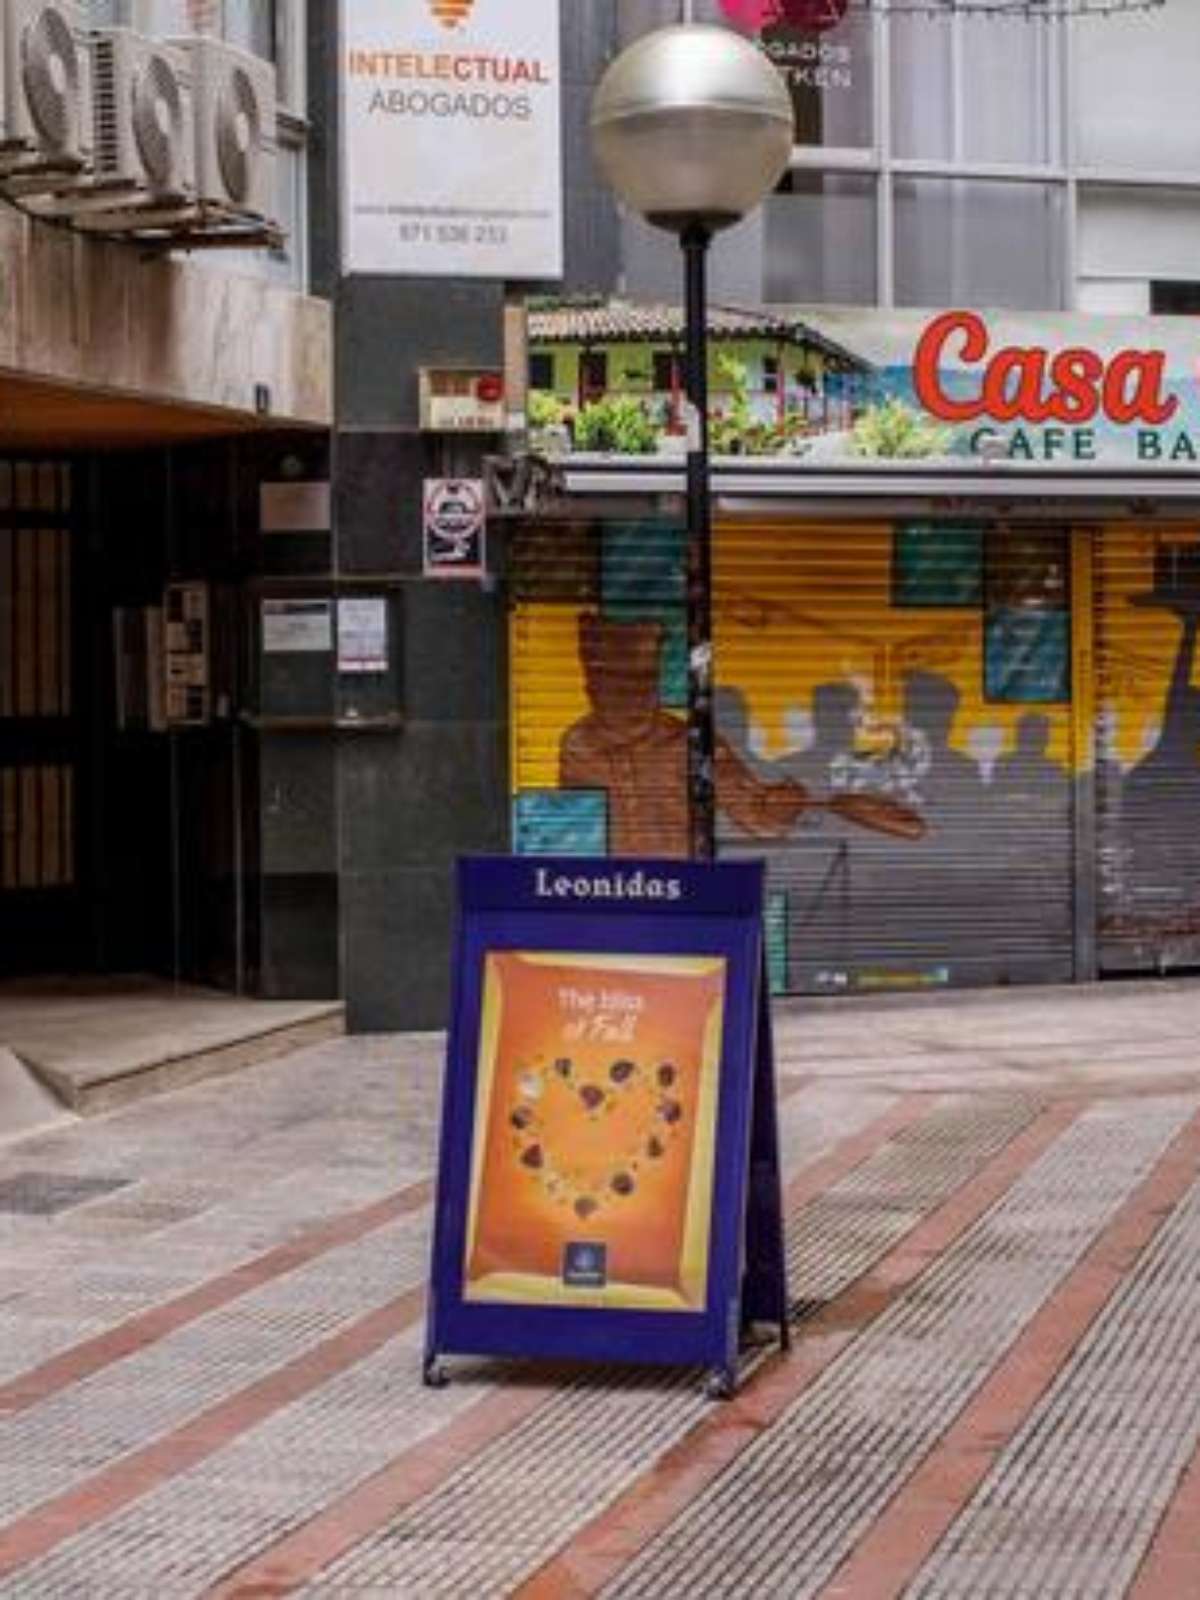 Sem turistas, Maiorca sofre os impactos da pandemia